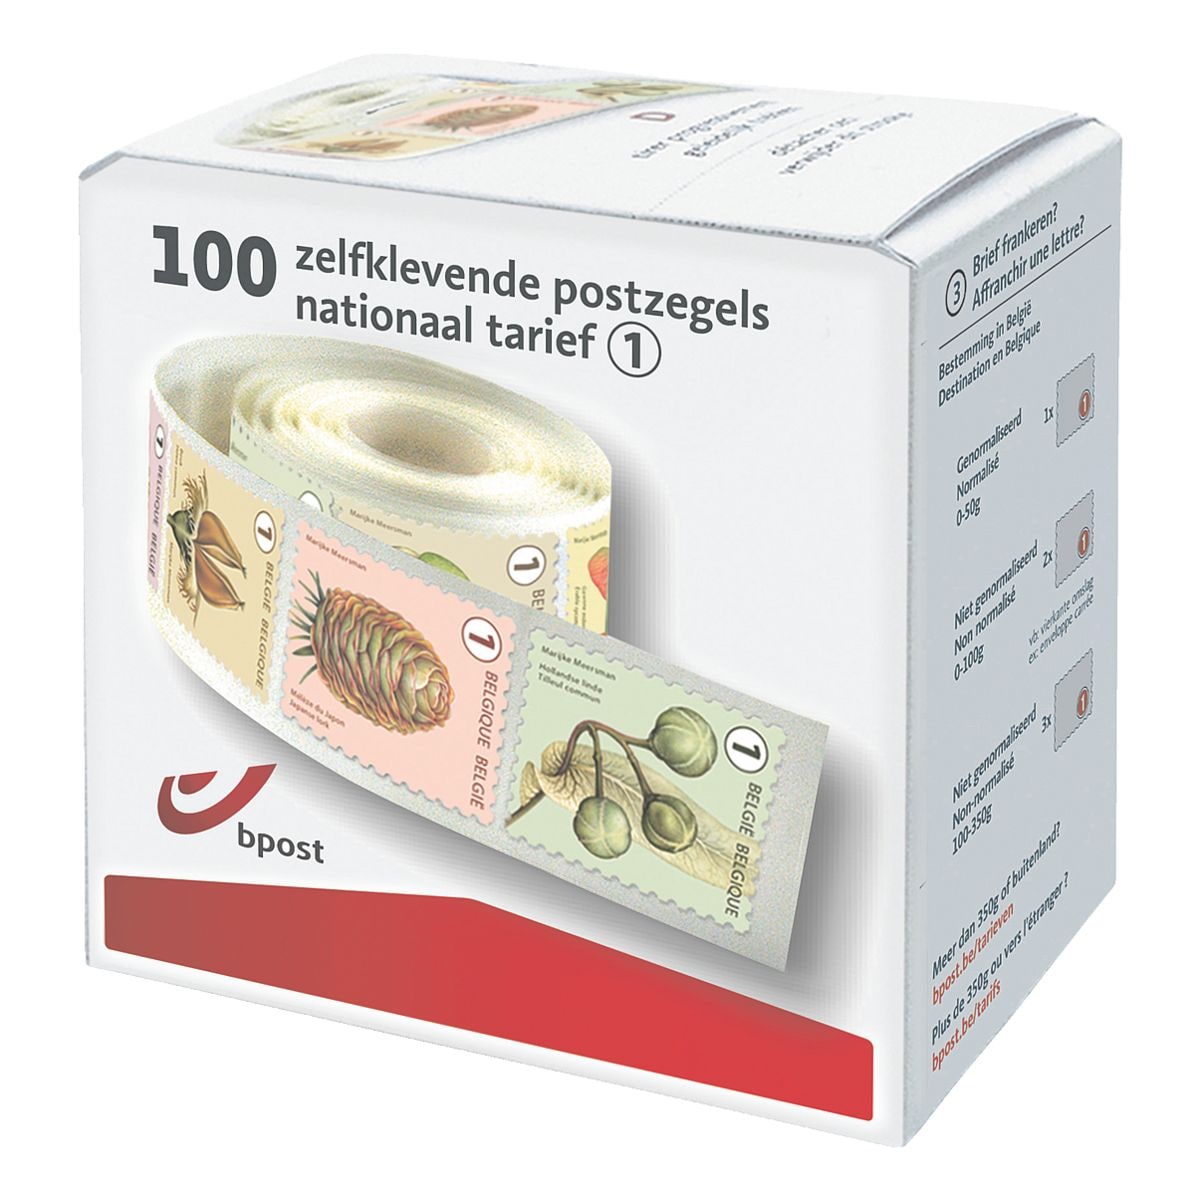 bpost Box met 100 postzegels, tarief 1: nationaal non prior (boomvruchten)